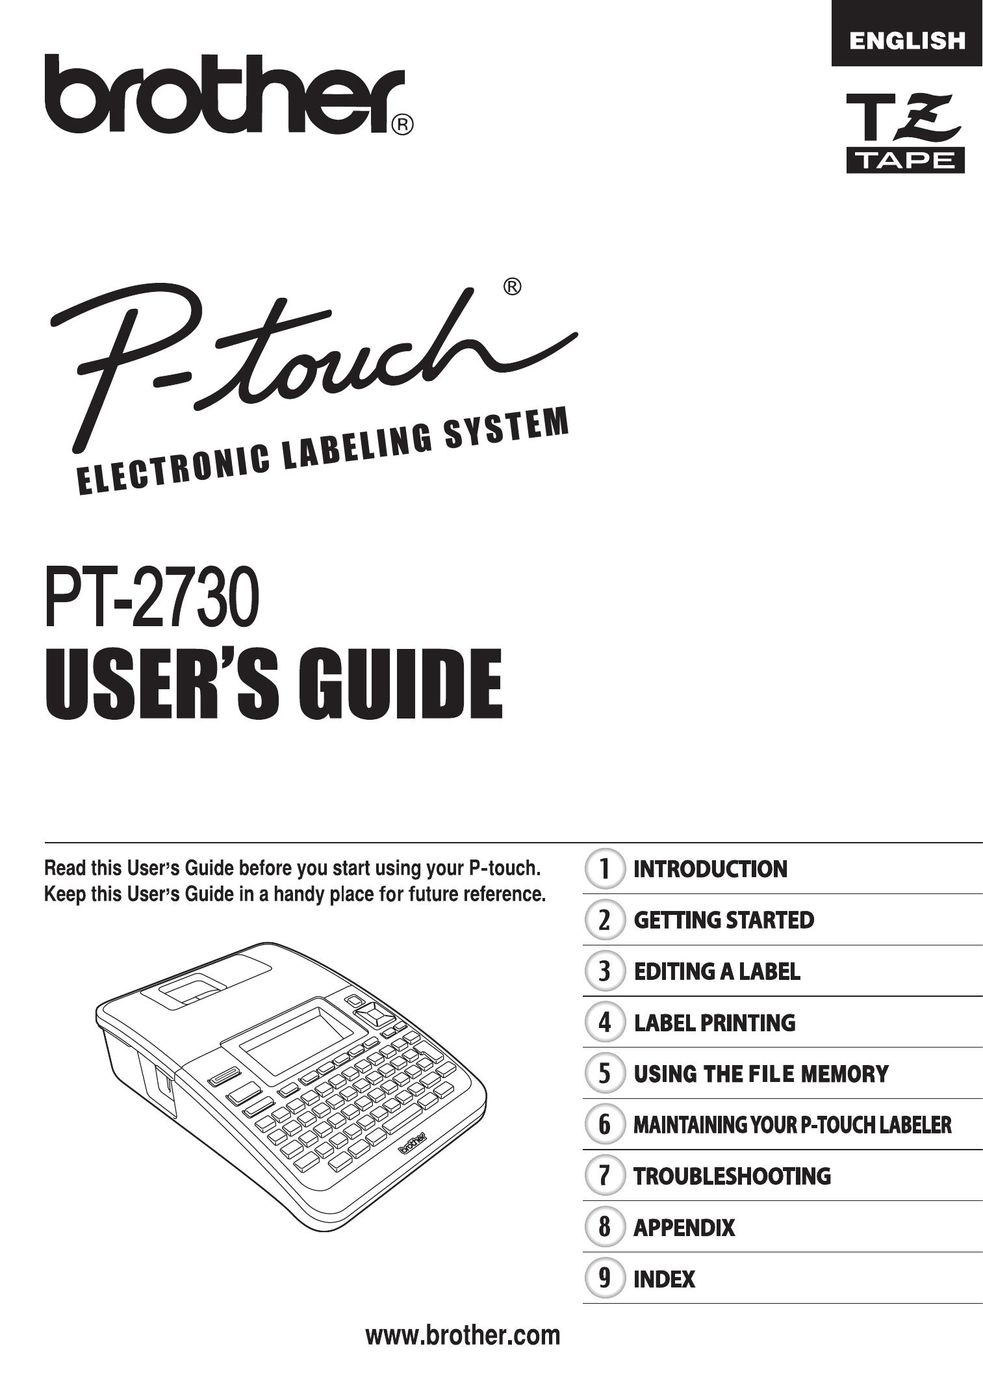 Brother PT-2730 Label Maker User Manual